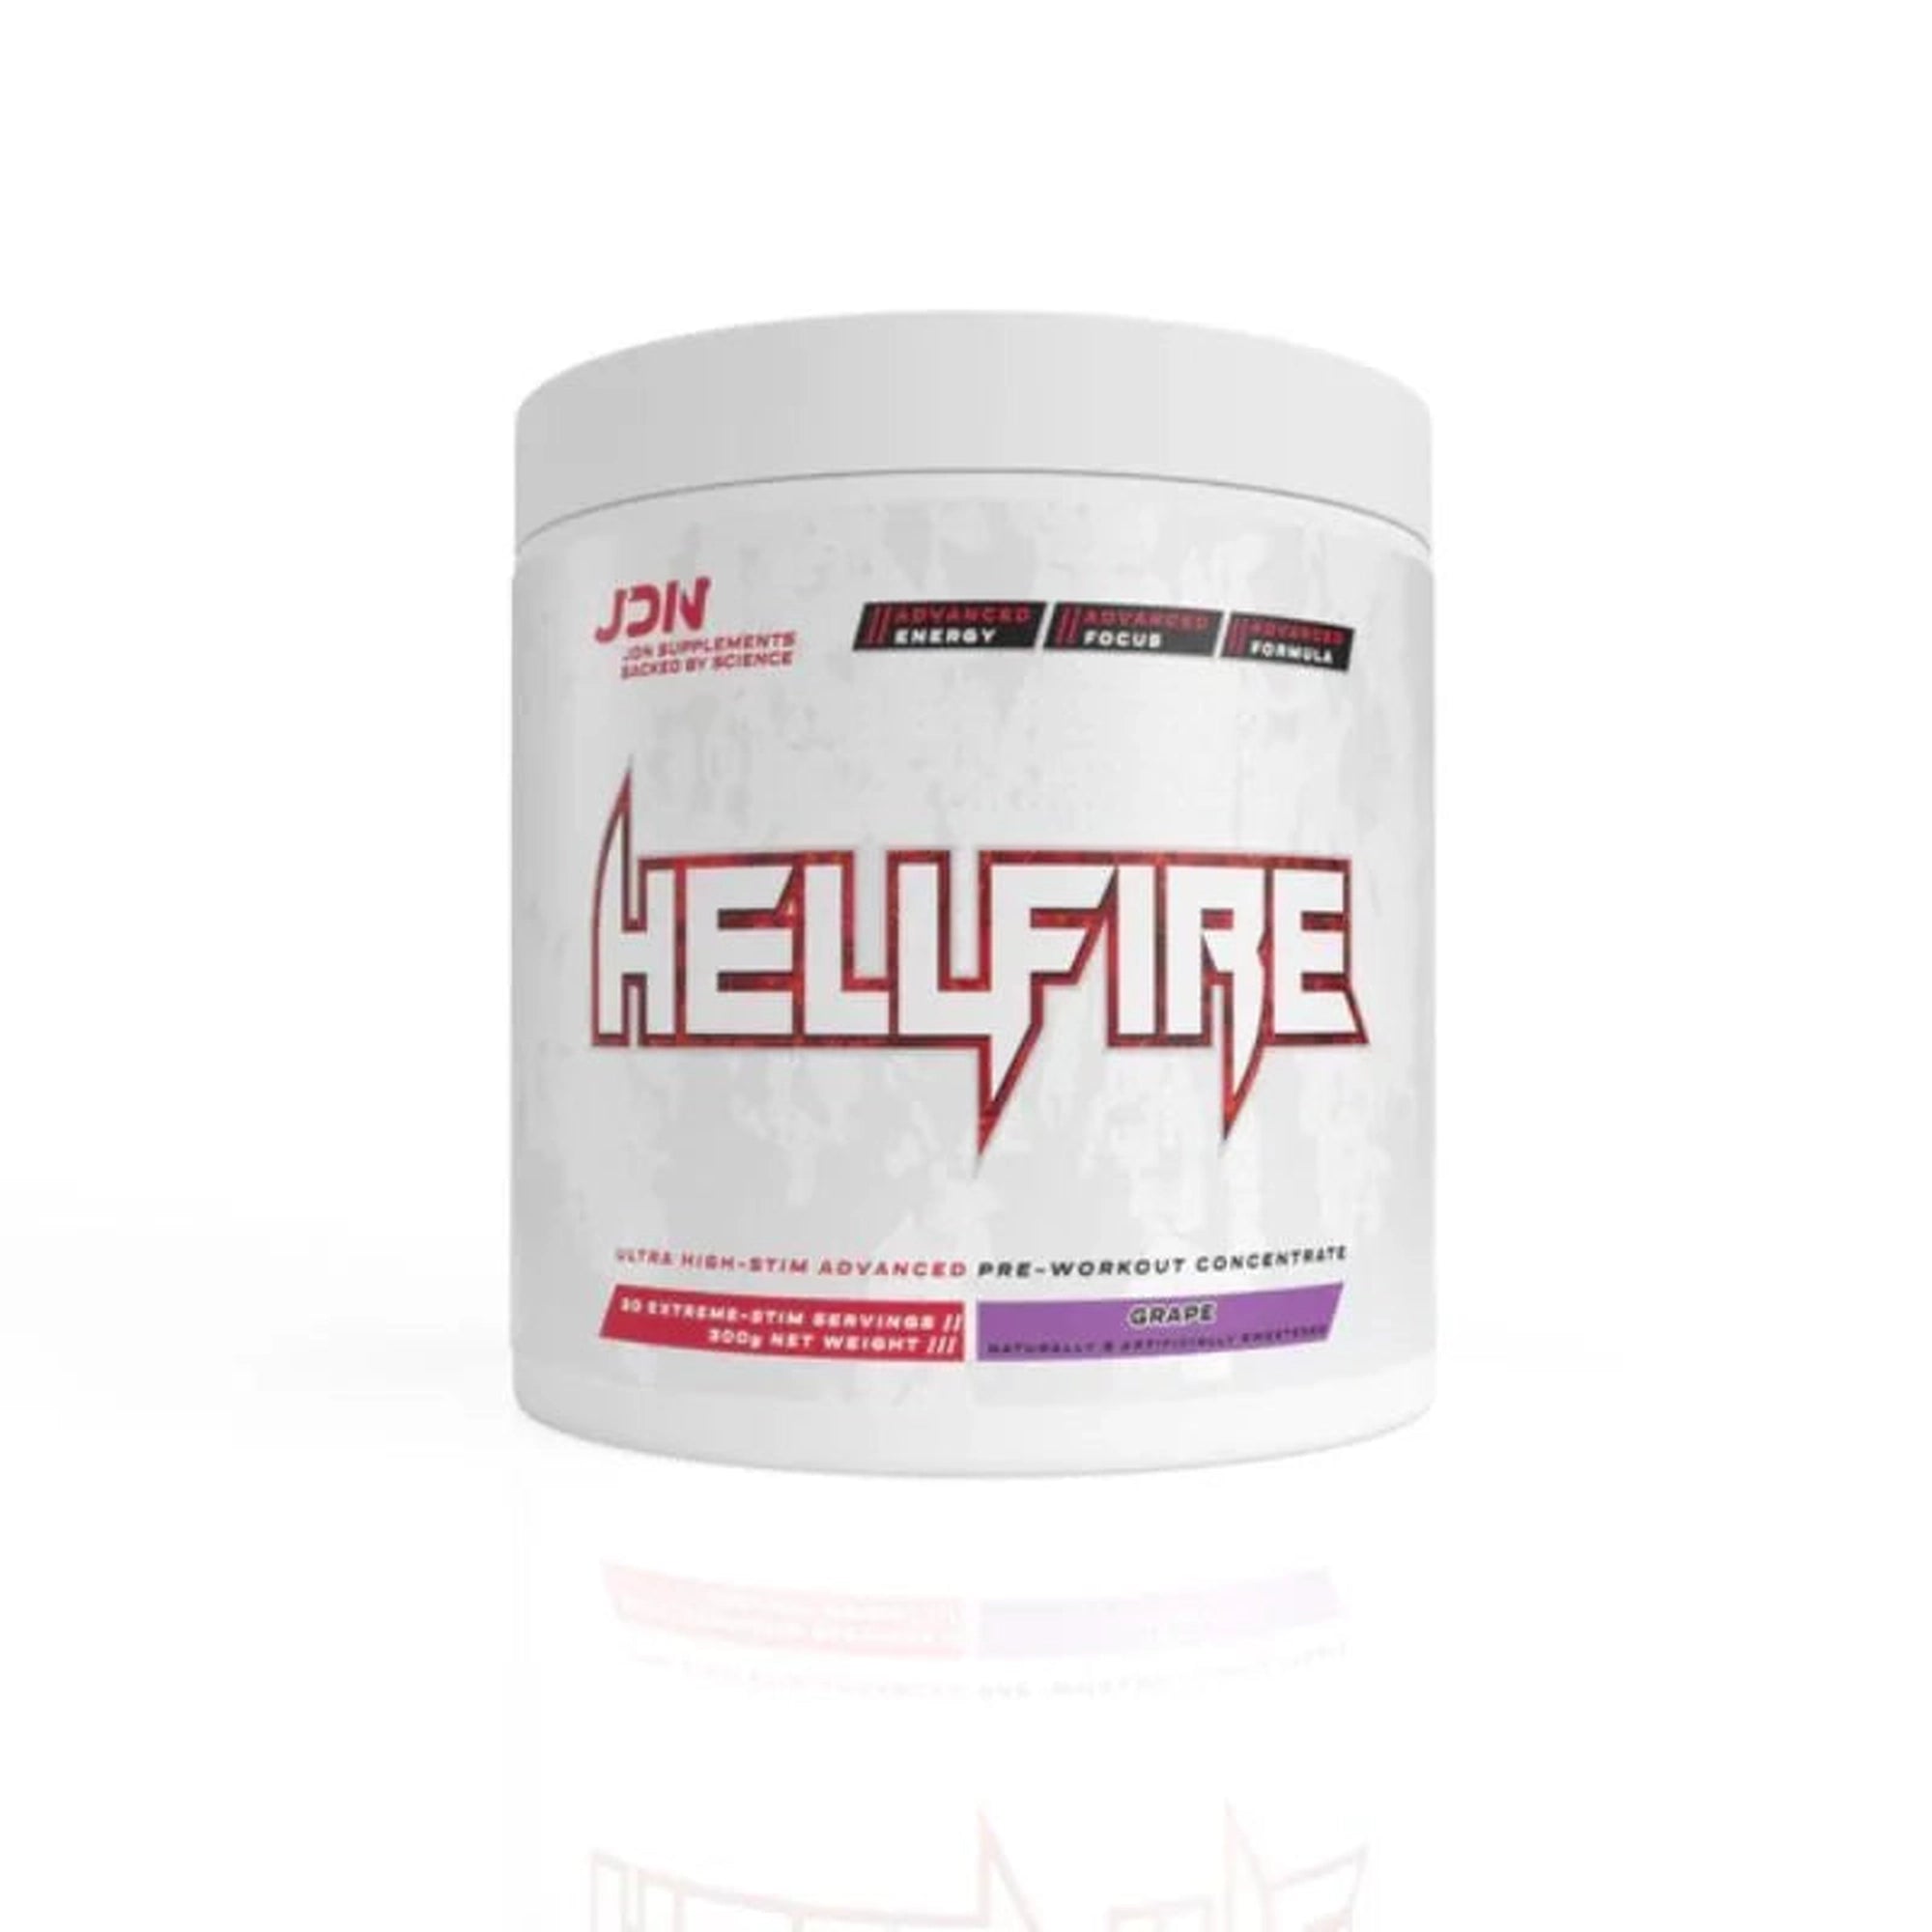 JDN Hellfire Pre Workout